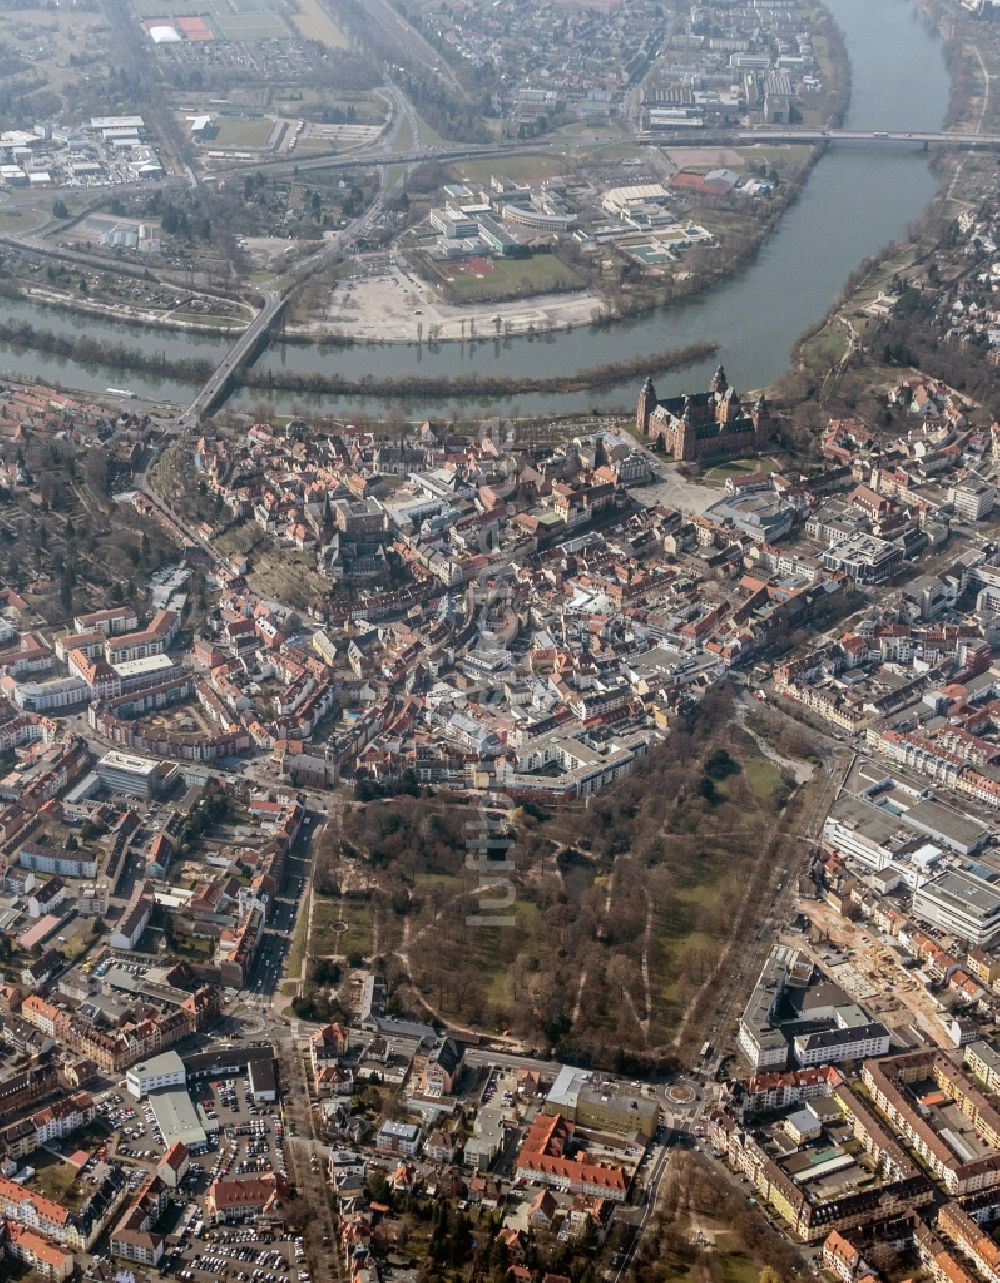 Luftbild Aschaffenburg - Innenstadt von Aschaffenburg im Bundesland Bayern